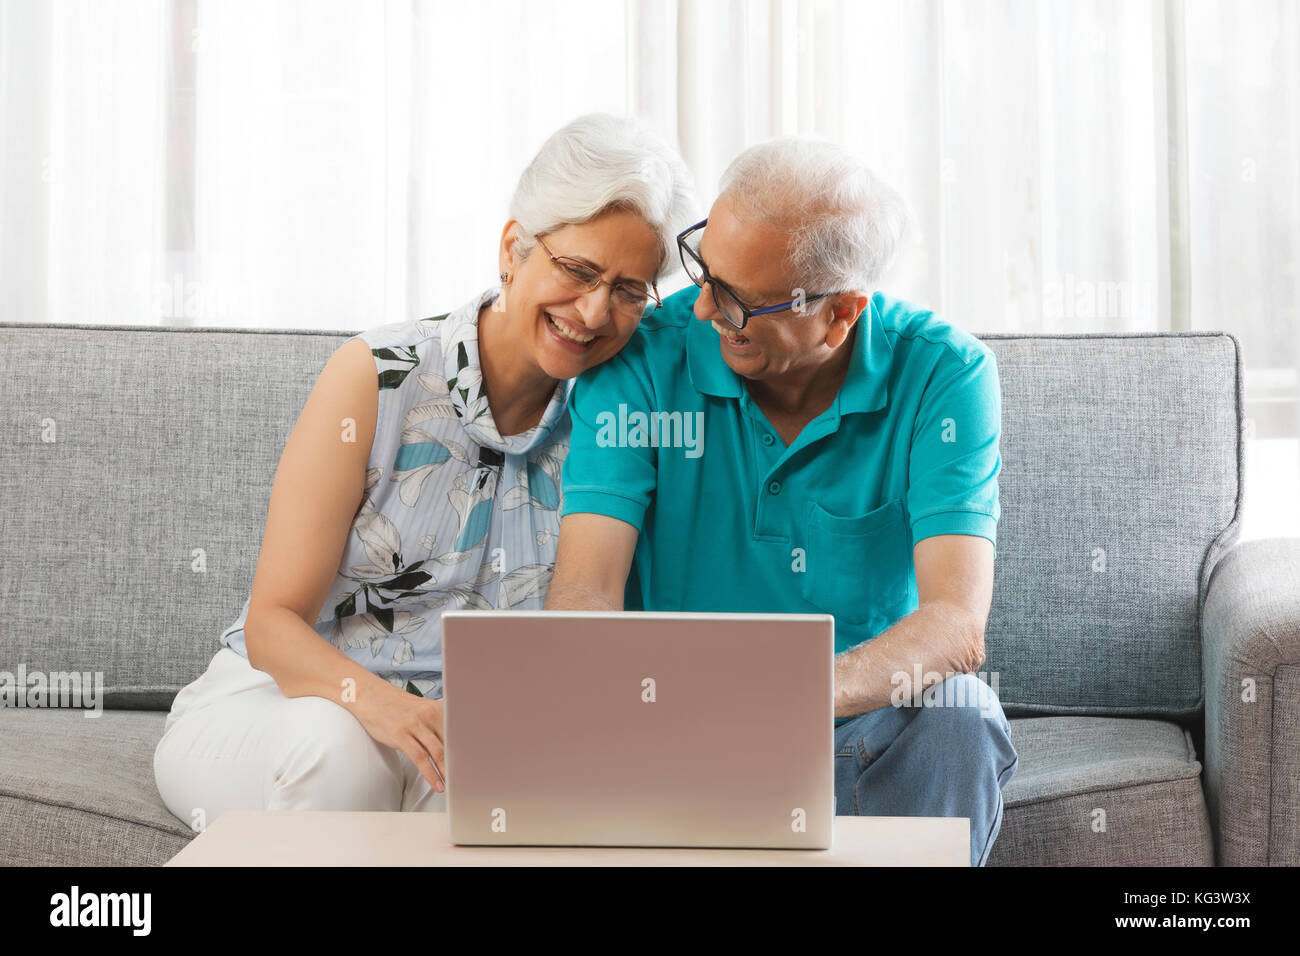 Smiling senior couple using laptop sitting on sofa Stock Photo